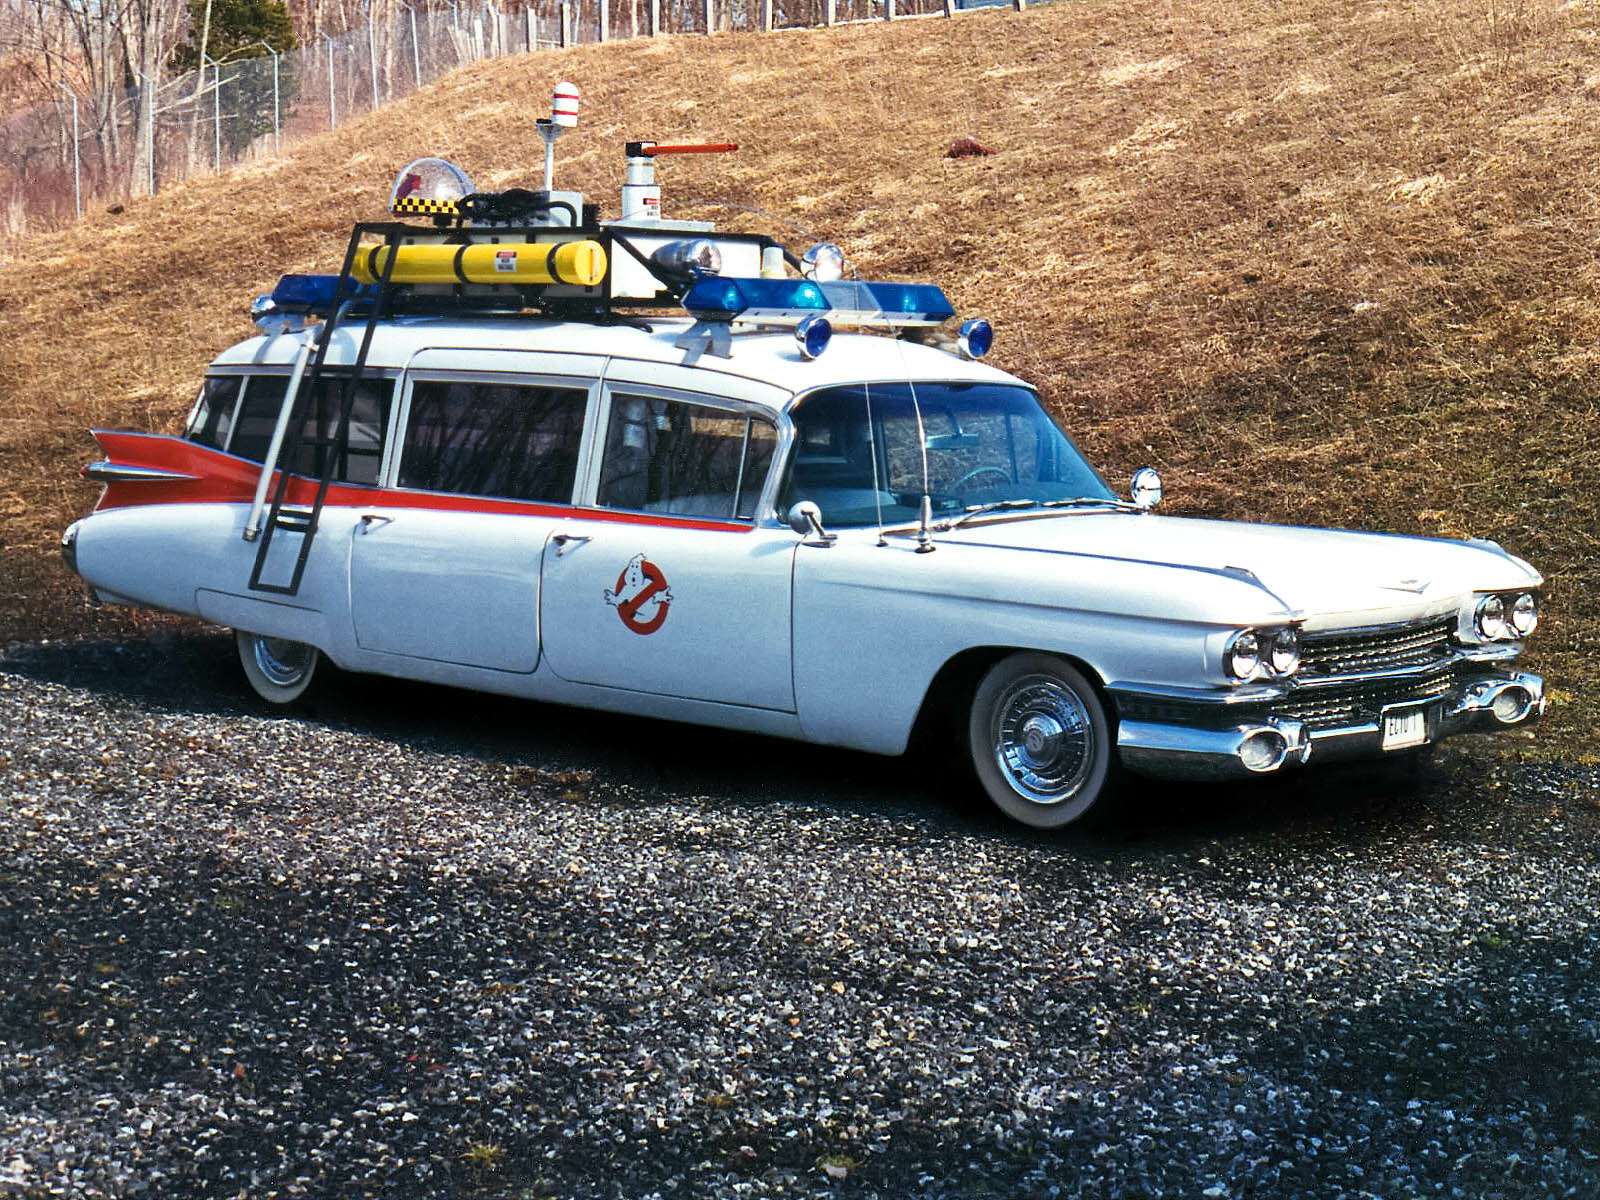 Ectomobile ECTO-1 – «Охотники за привидениями». Не менее культовым можно считать боевой автомобиль охотников за привидениями. Эктомобиль был переделан из модели Miller-Meteor Futura для скорой помощи. Он, в свою очередь, построен на базе Cadillac Fleetwood 1959 года. Автомобиль сопровождал героев в обеих частях фильма. А вот в новом эпизоде, стартующем в этом году, в качестве автомобиля охотников используется универсал на базе все того же Cadillac Fleetwood, но уже модели 1976 года.